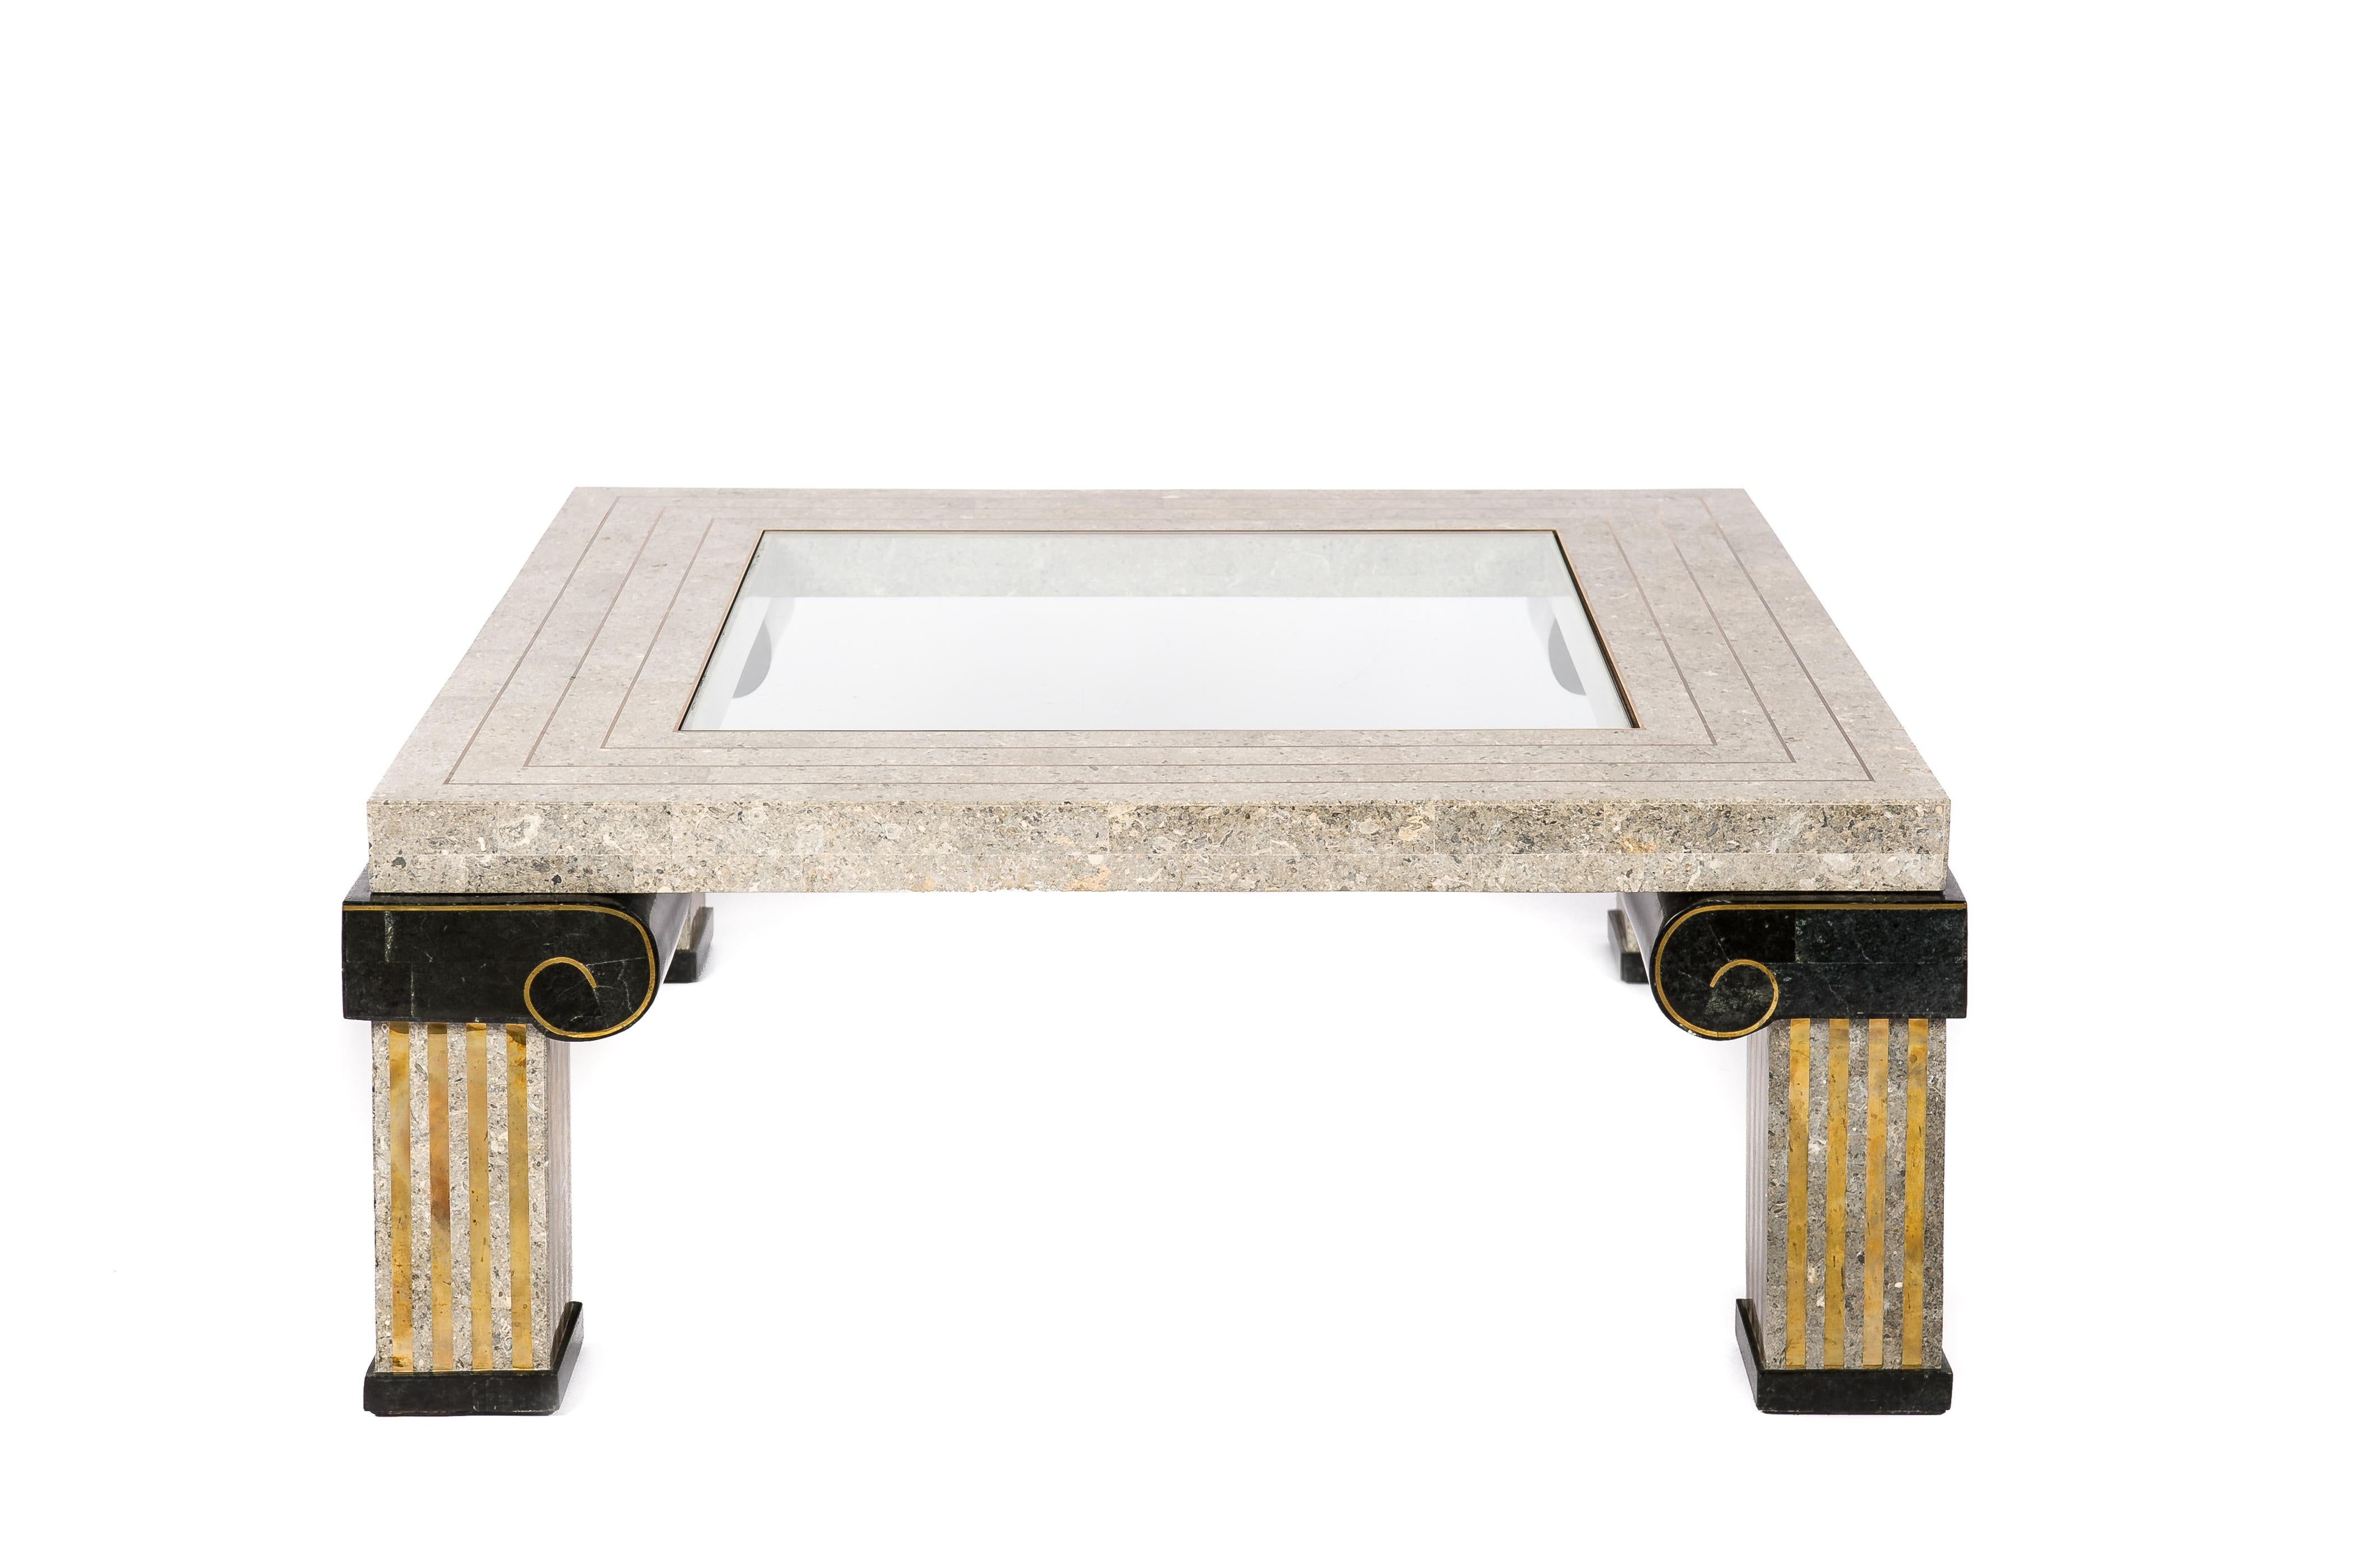 Cette magnifique table basse artisanale avec un panneau central en verre et des bordures en laiton incrusté a été fabriquée par Maitland Smith aux Philippines dans les années 1980. Il s'agit d'une pièce rare réalisée dans le style néoclassique avec